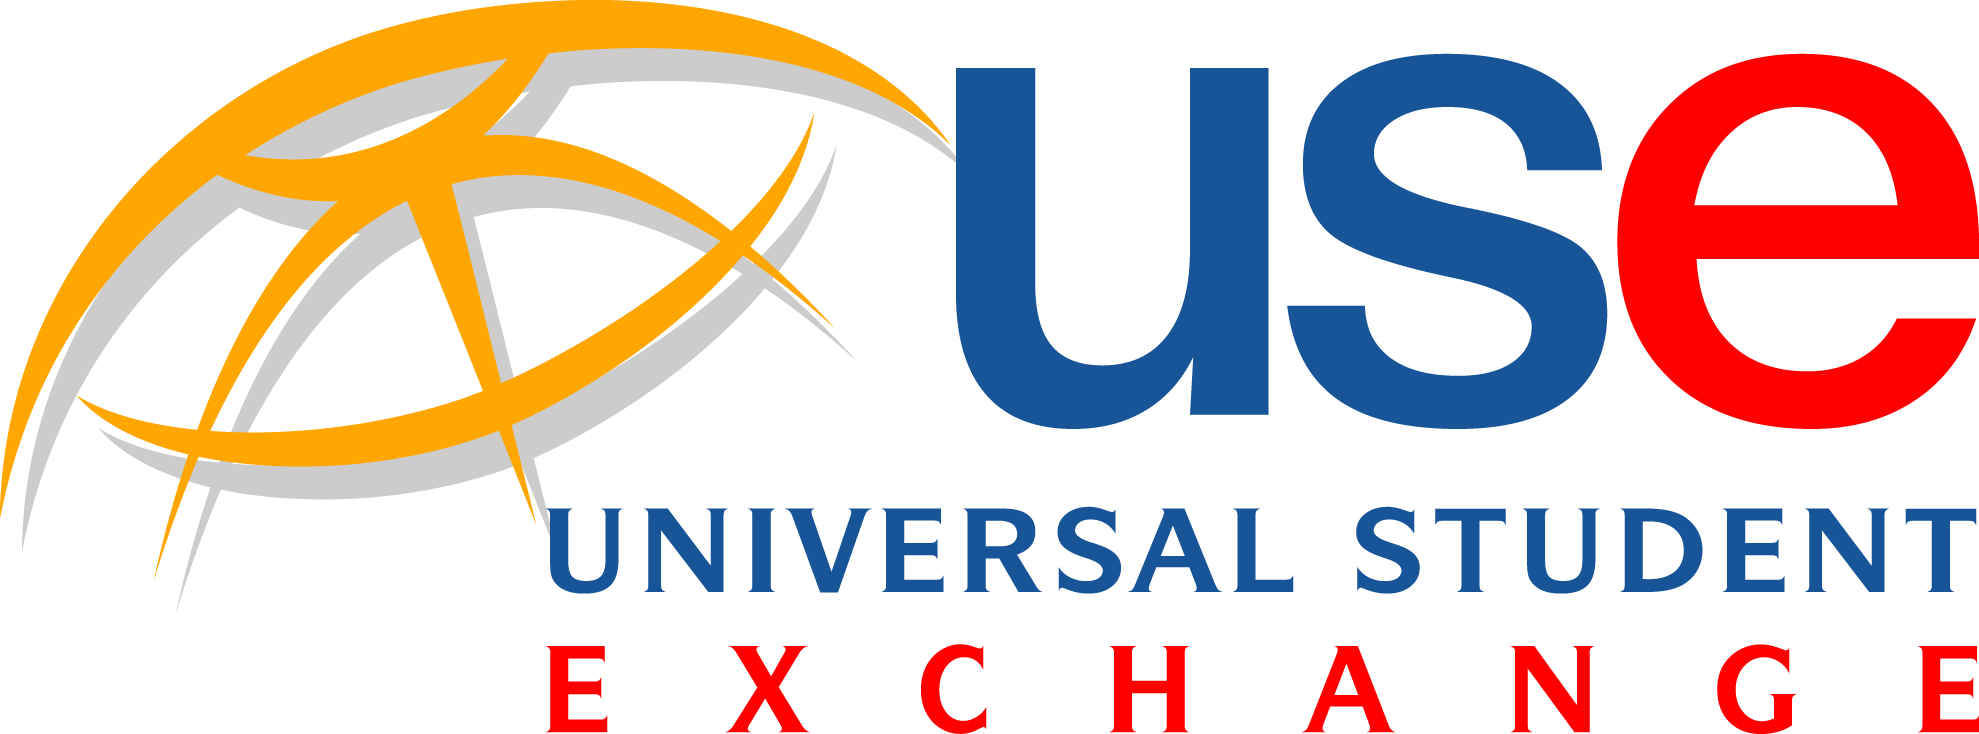 USE_logo